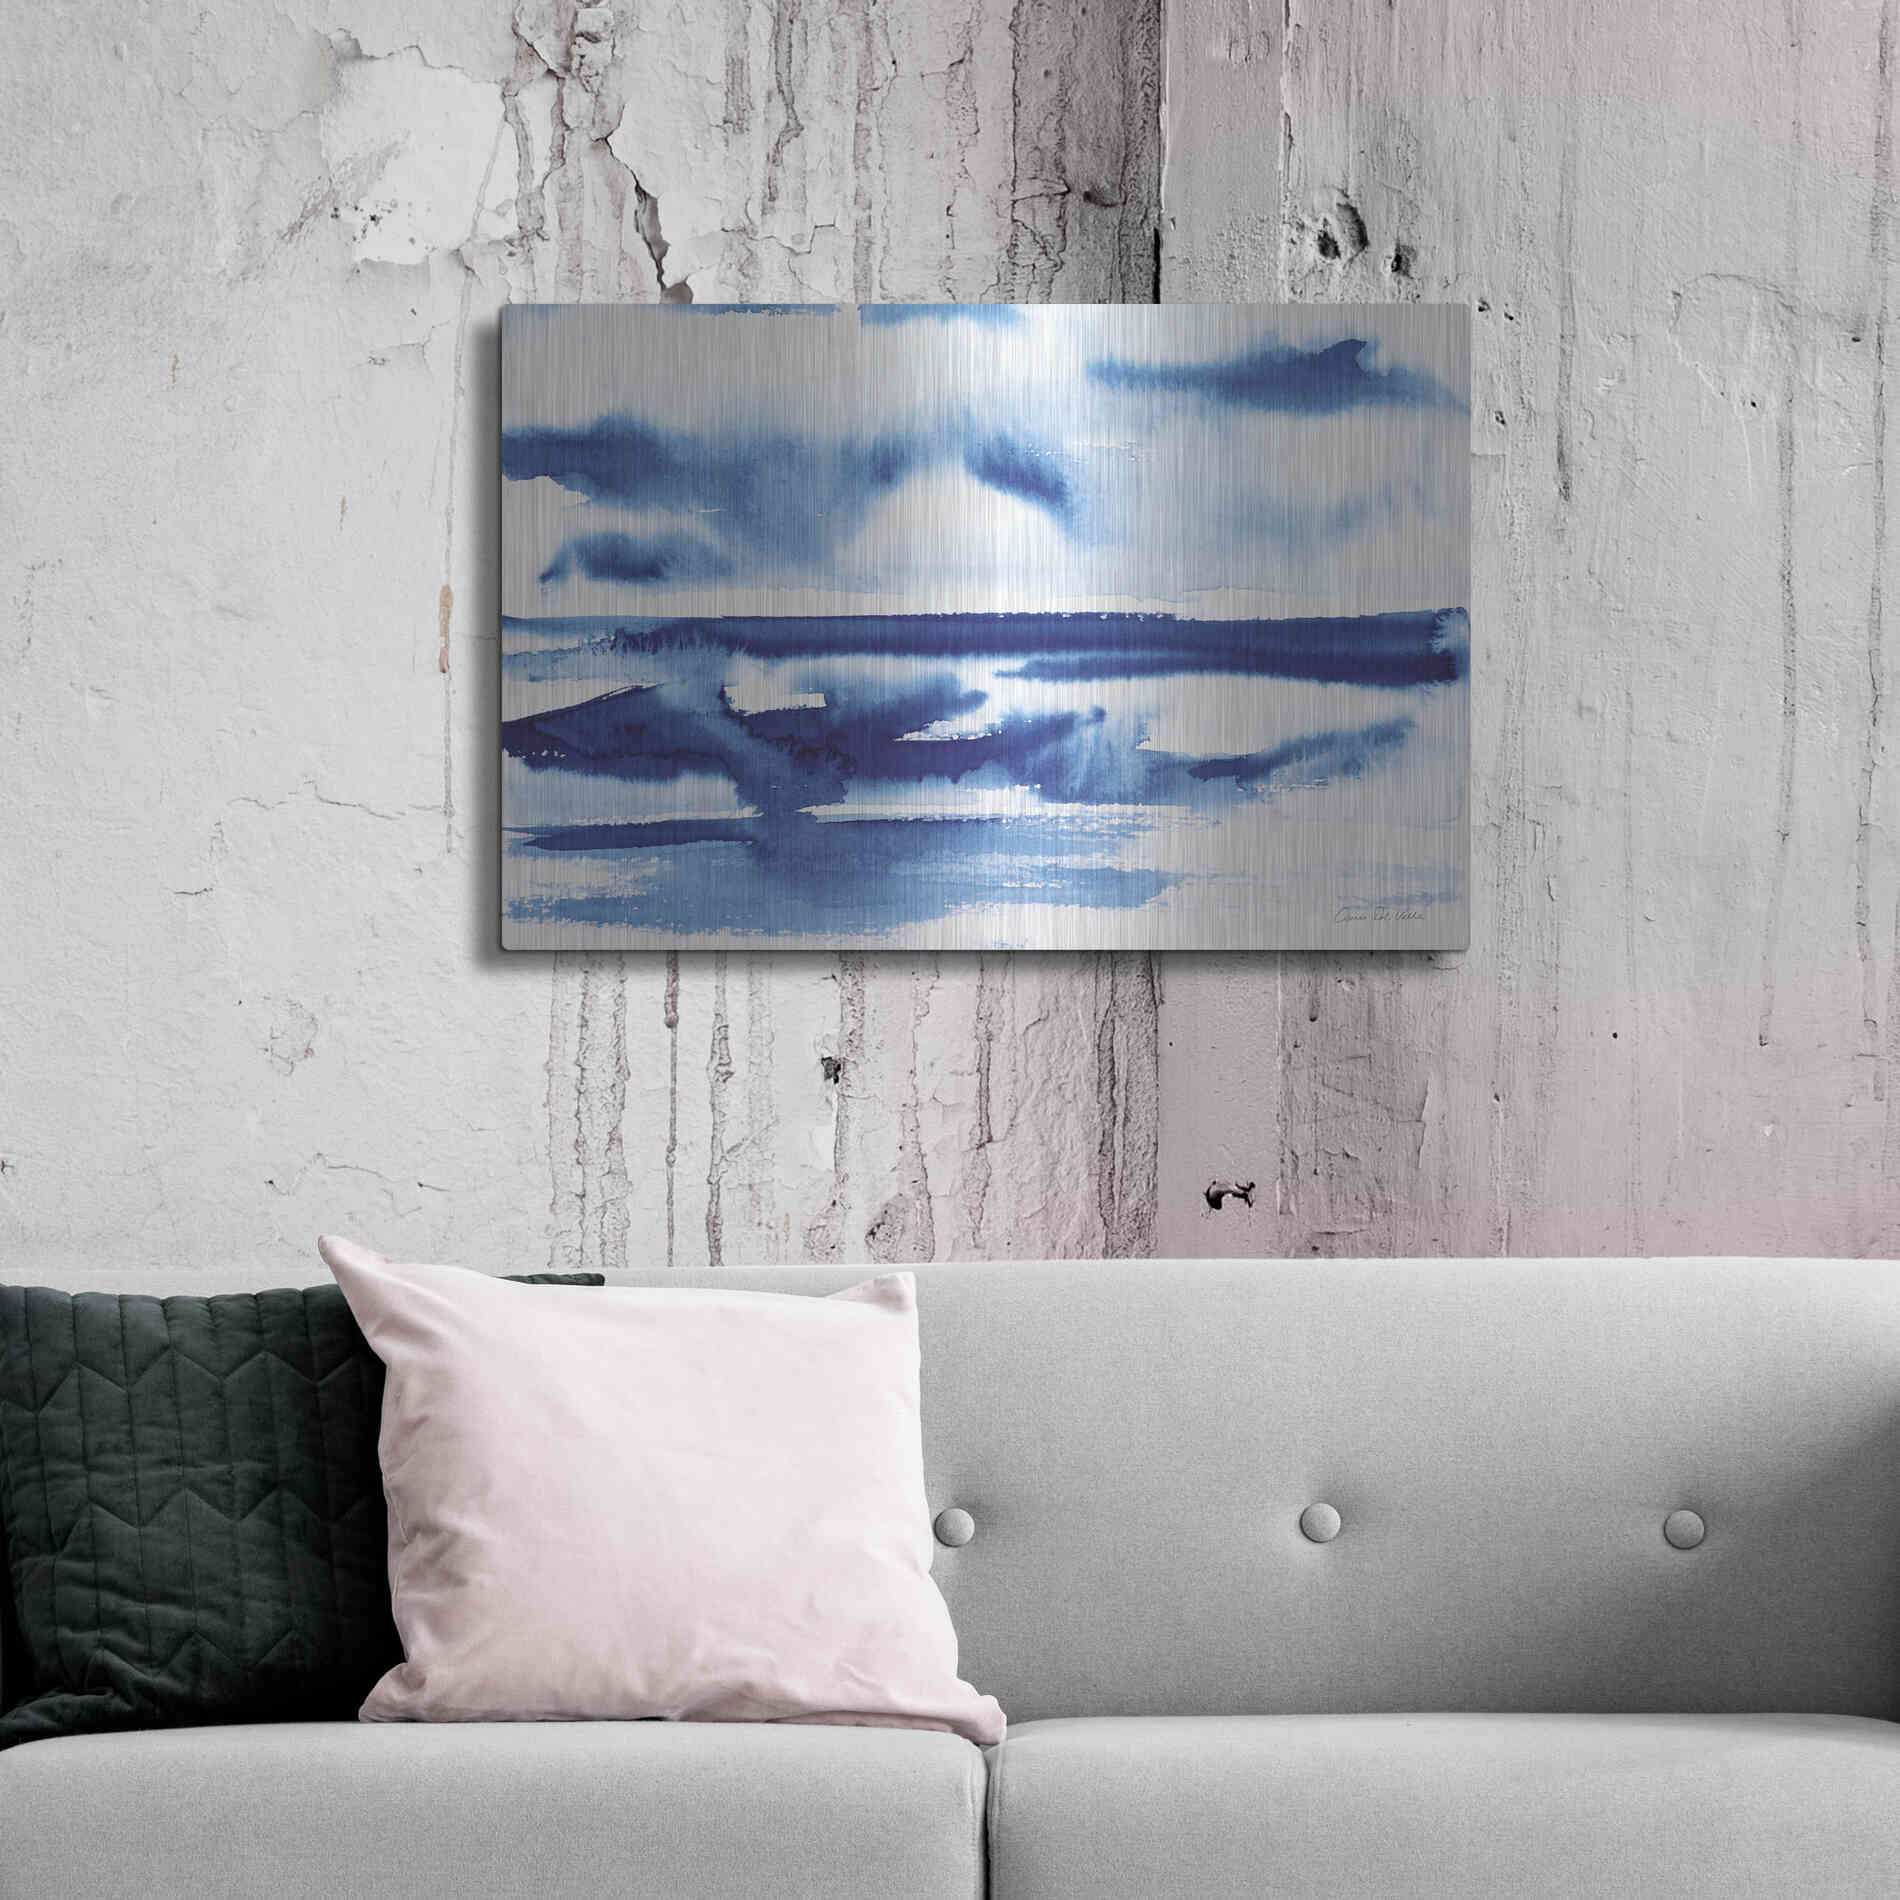 Luxe Metal Art 'Ocean Blue II' by Alan Majchrowicz, Metal Wall Art,36x24